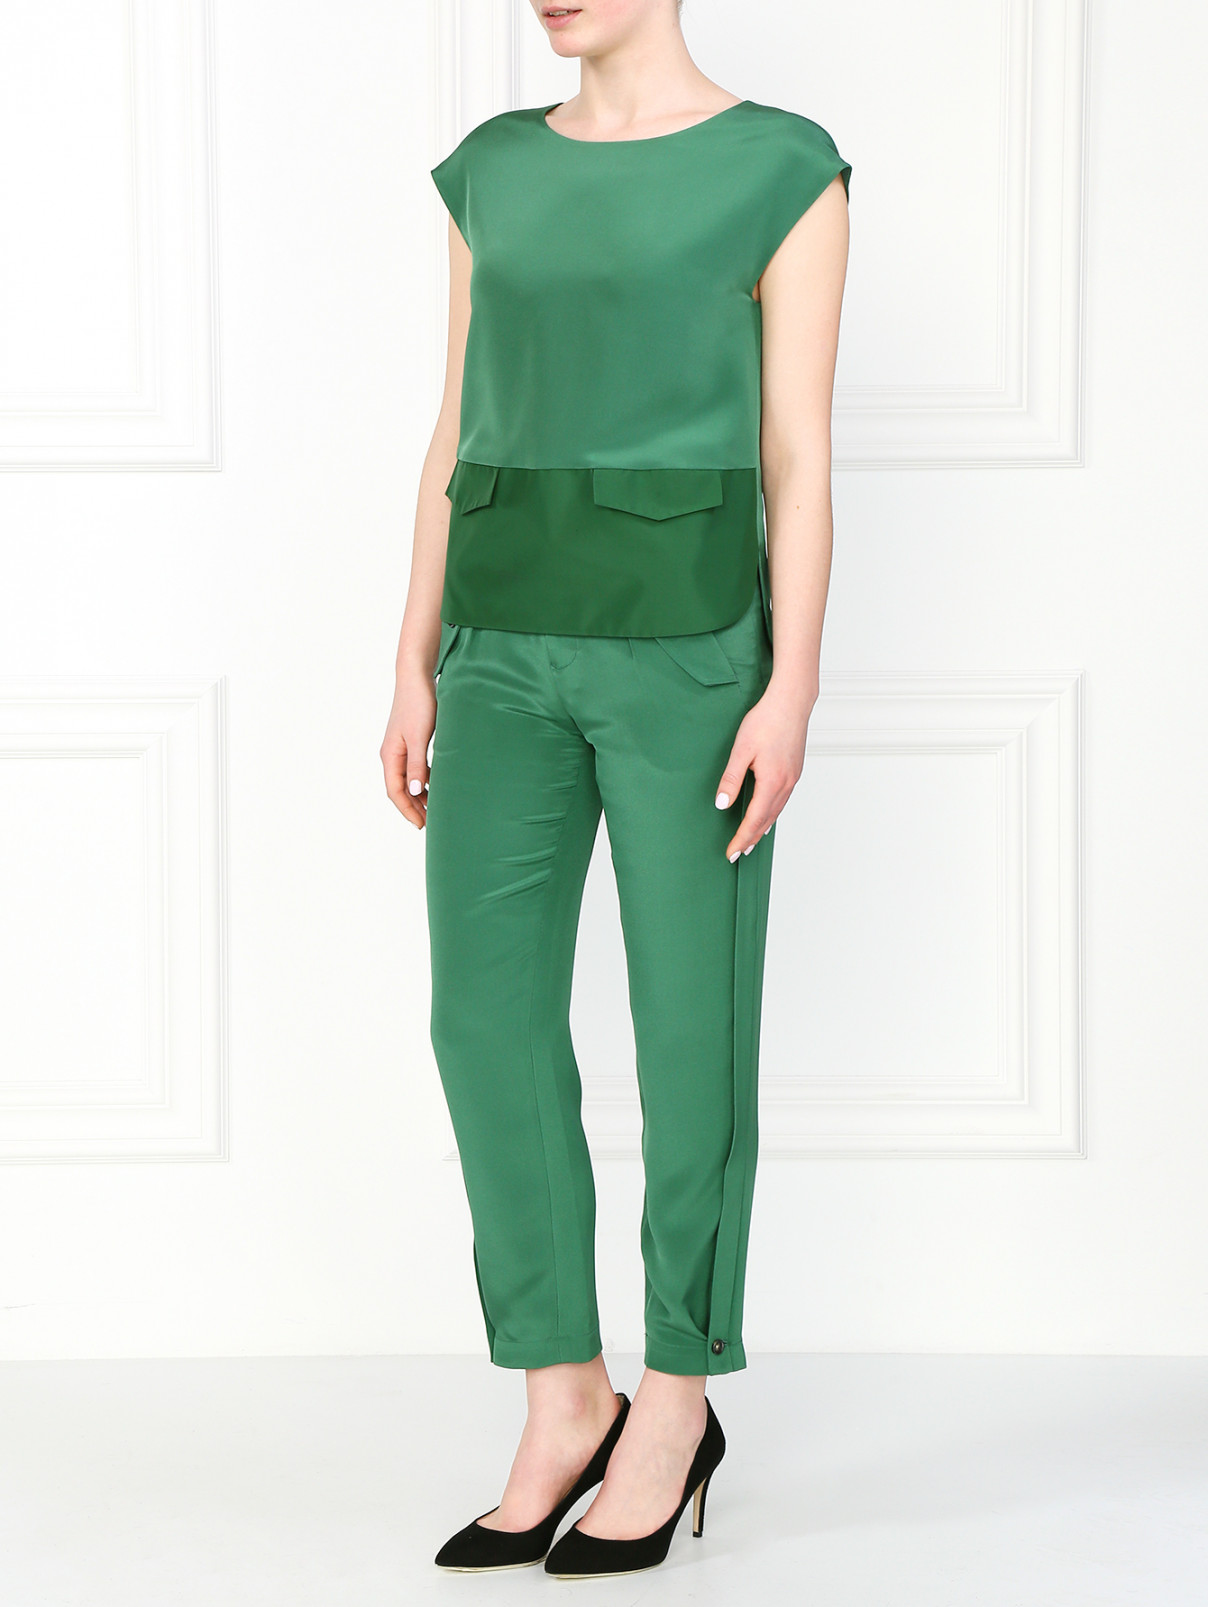 Шелковая блуза с круглым вырезом Emporio Armani  –  Модель Общий вид  – Цвет:  Зеленый